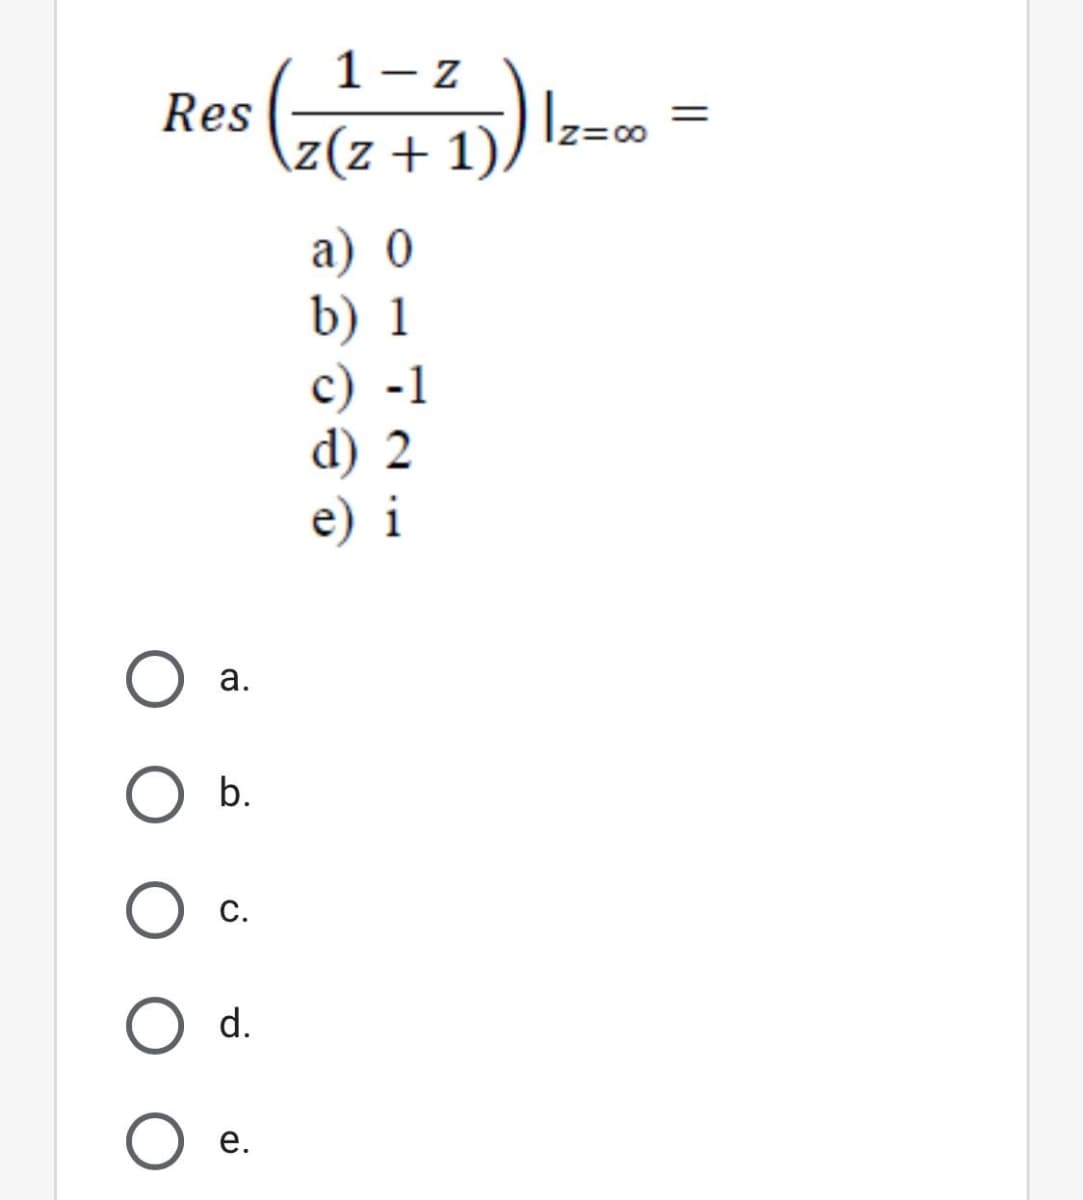 1 - z
Res
\z(z + 1),
Iz=00
а) 0
b) 1
с) -1
d) 2
e) i
а.
O b.
С.
d.
е.
||
